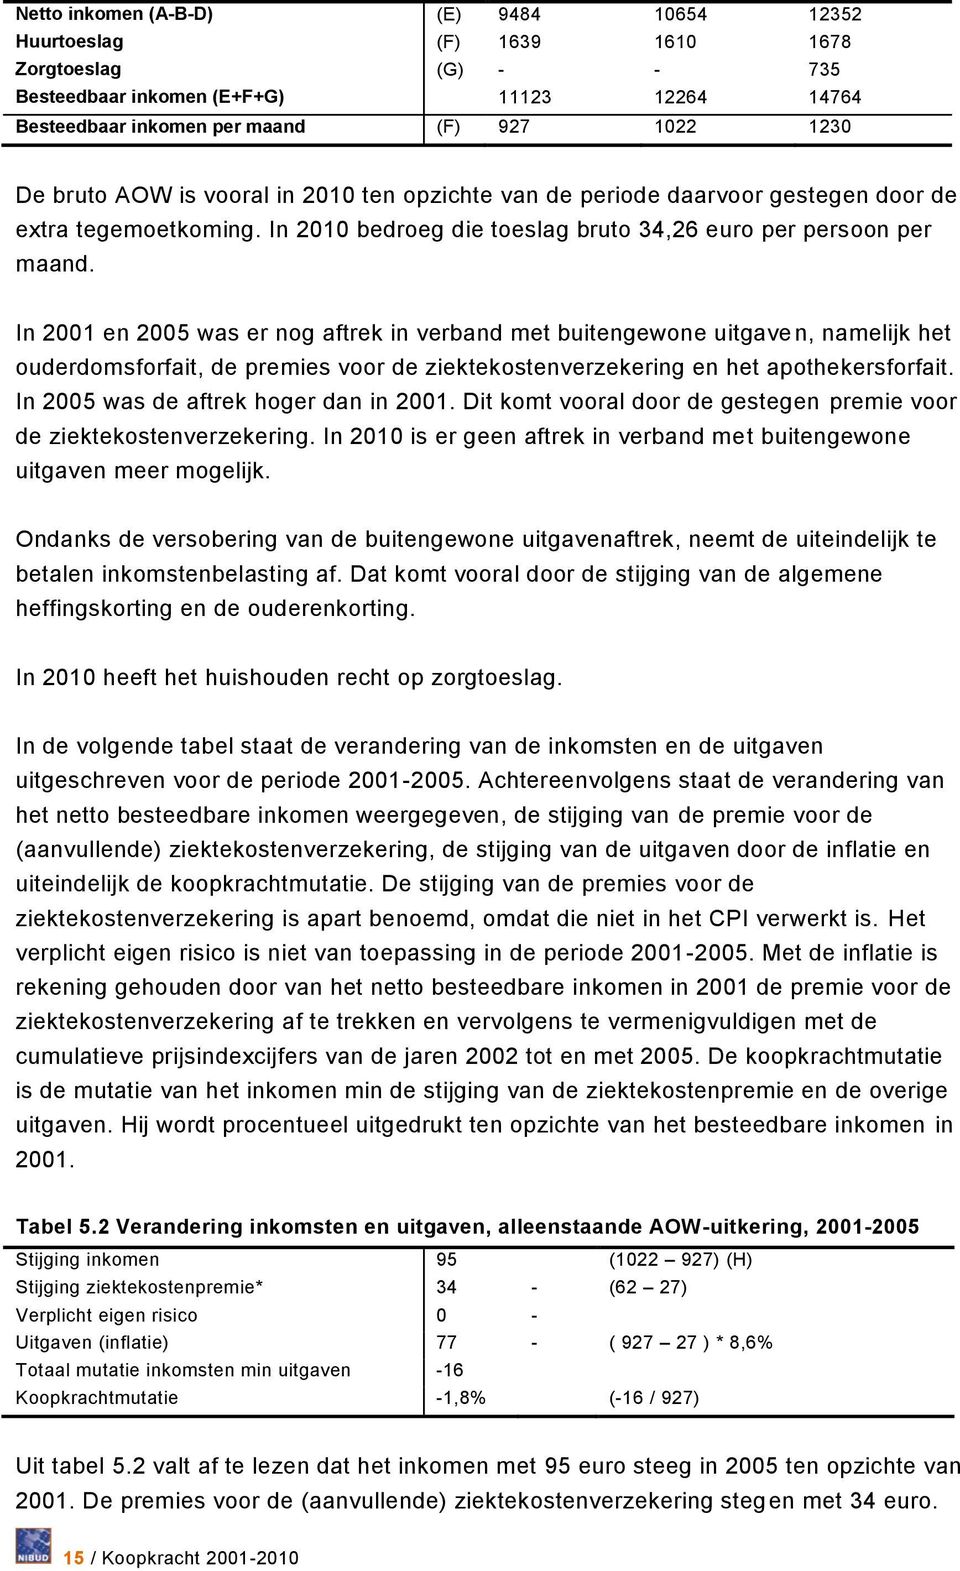 In 2001 en 2005 was er nog aftrek in verband met buitengewone uitgaven, namelijk het ouderdomsforfait, de premies voor de ziektekostenverzekering en het apothekersforfait.